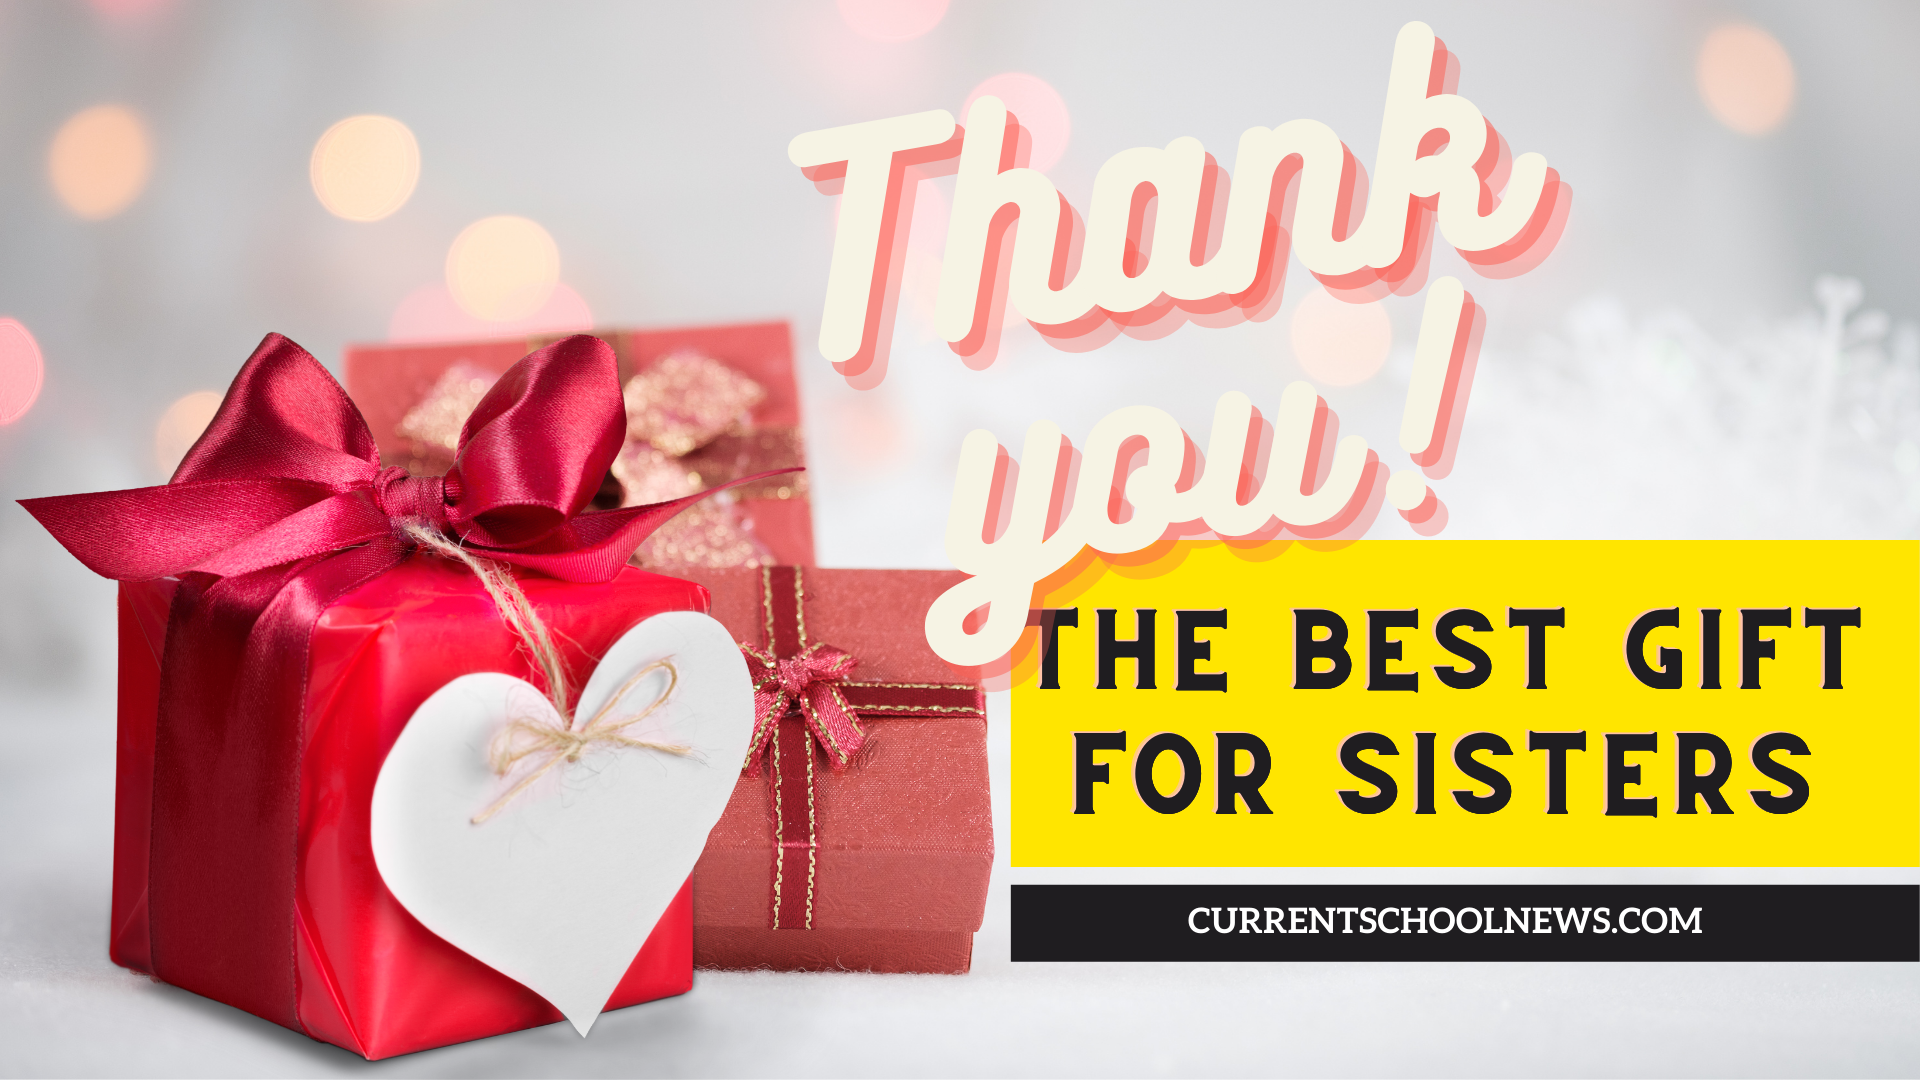 Das beste Geschenk für Schwestern, um zu zeigen, wie sehr Sie lieben und sich kümmern